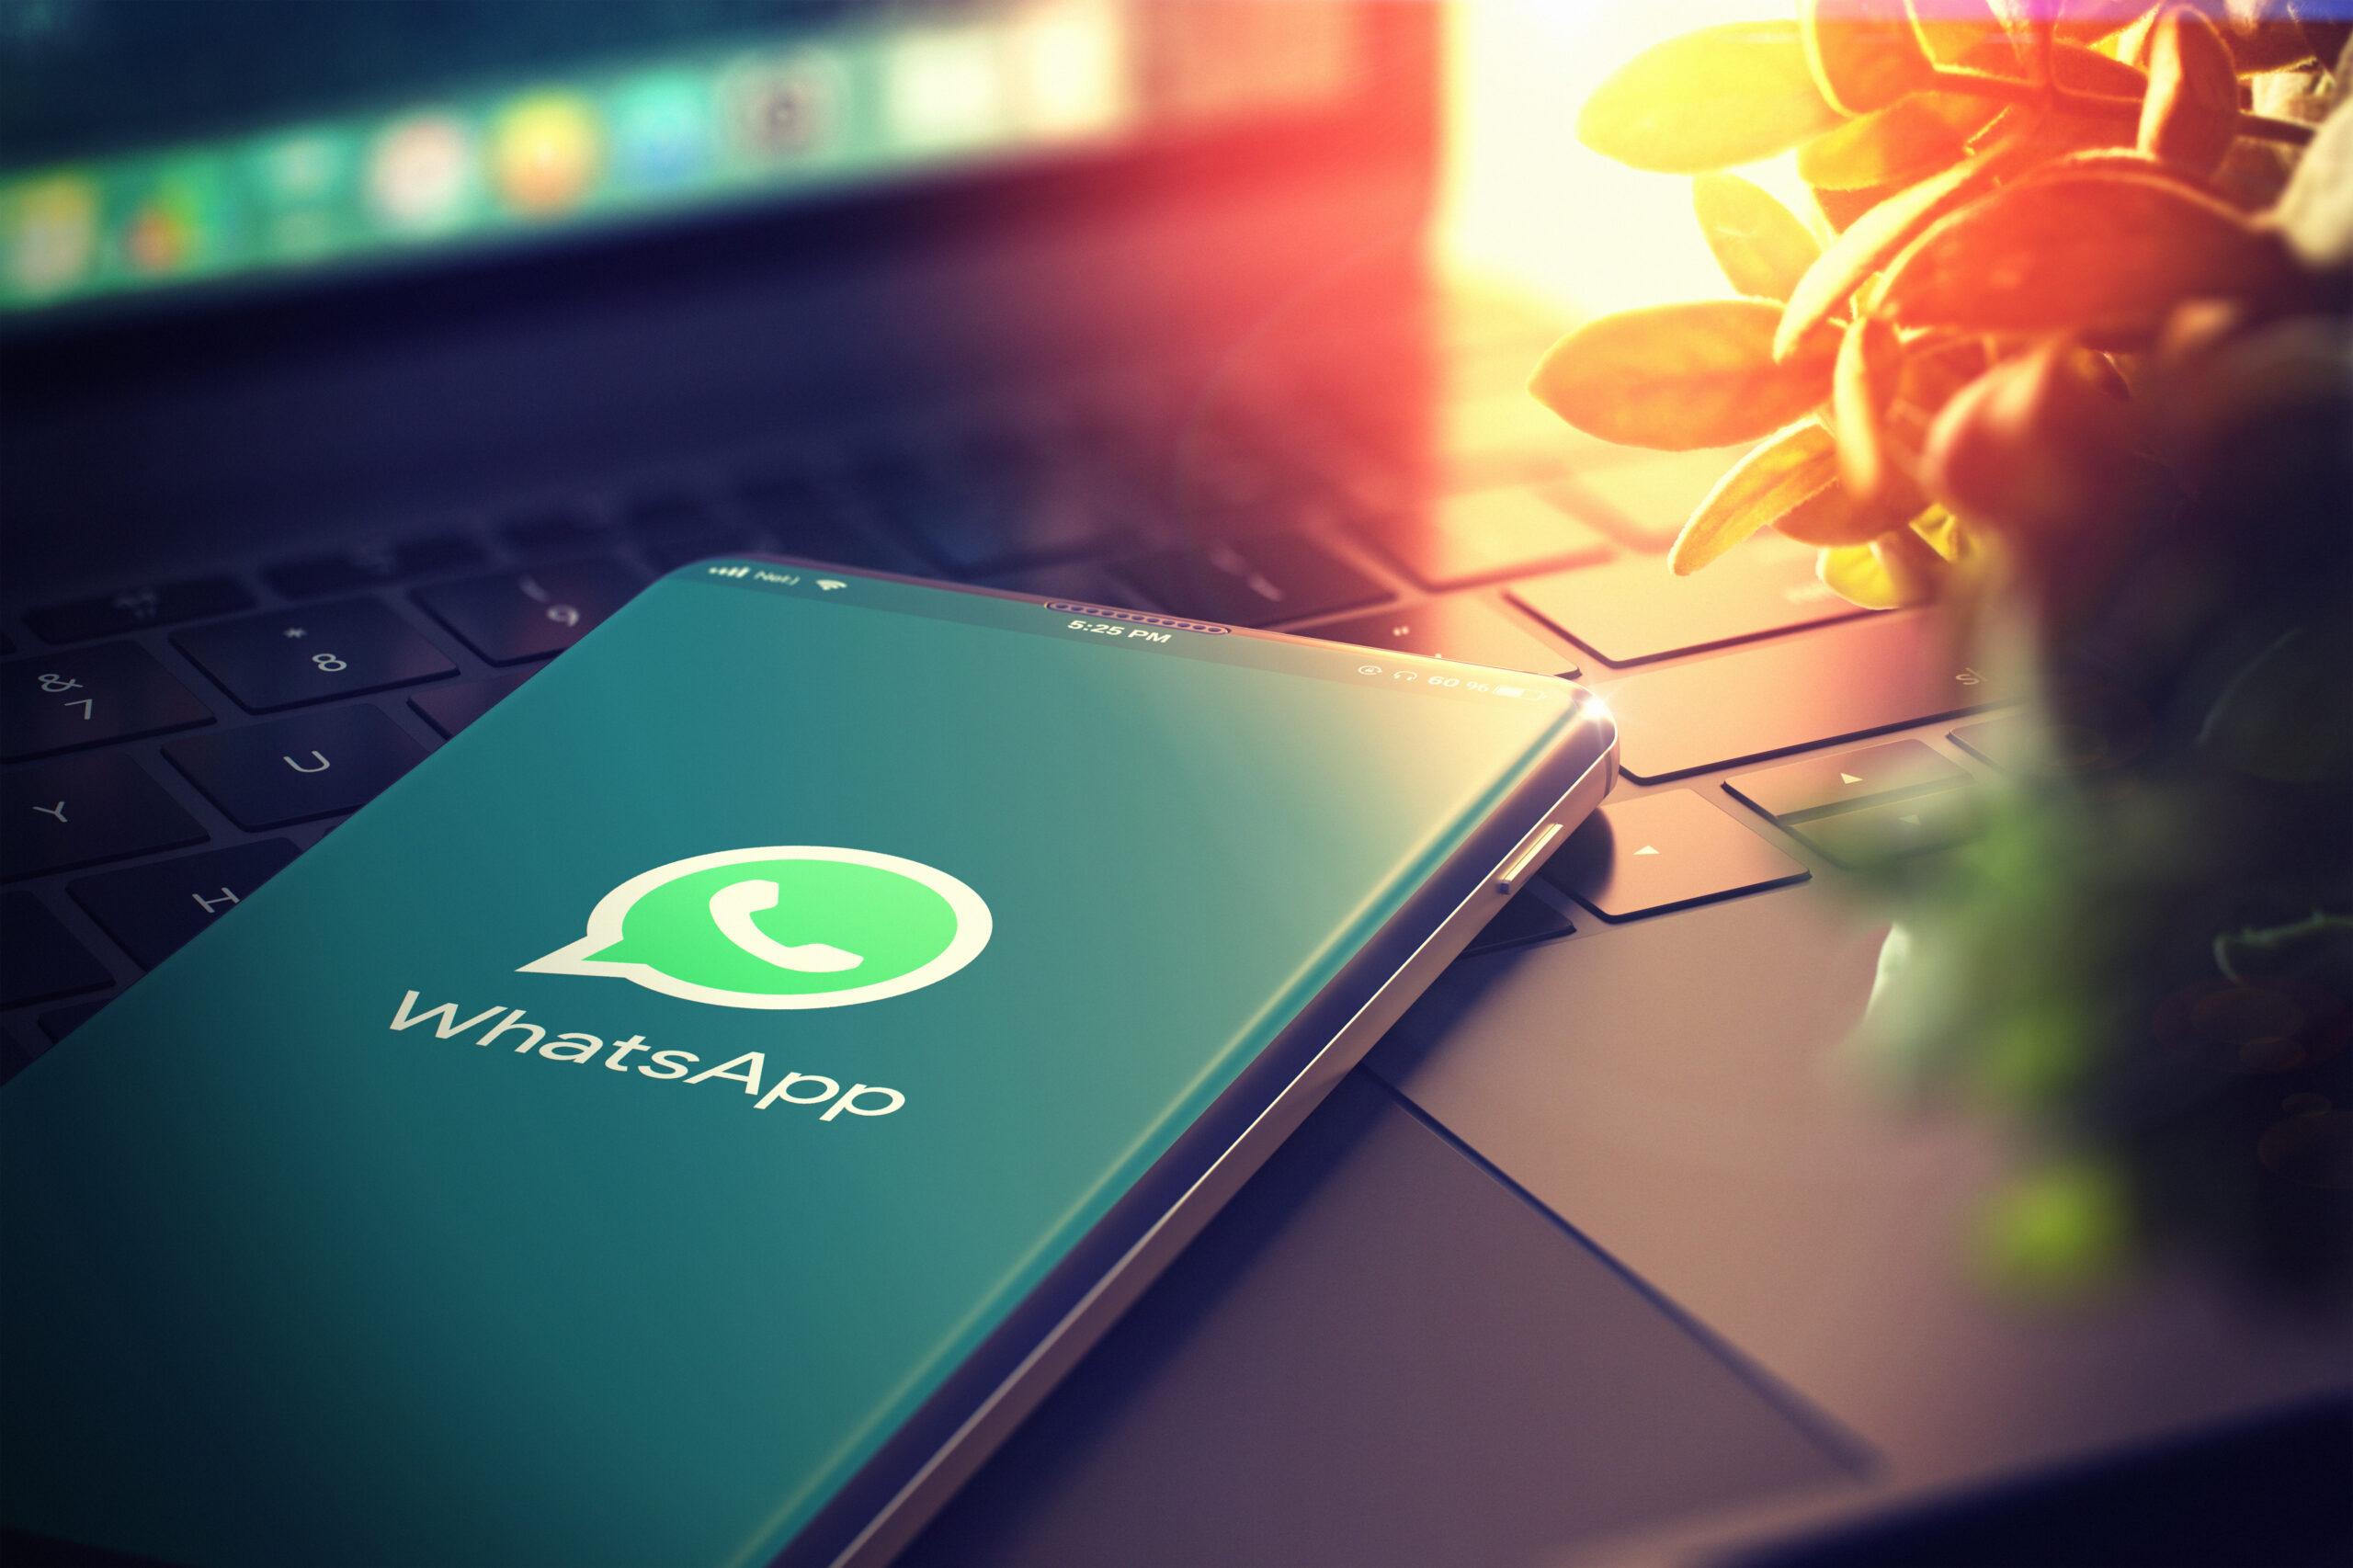 Controllare WhatsApp senza aprire l'applicazione? Ecco il trucco